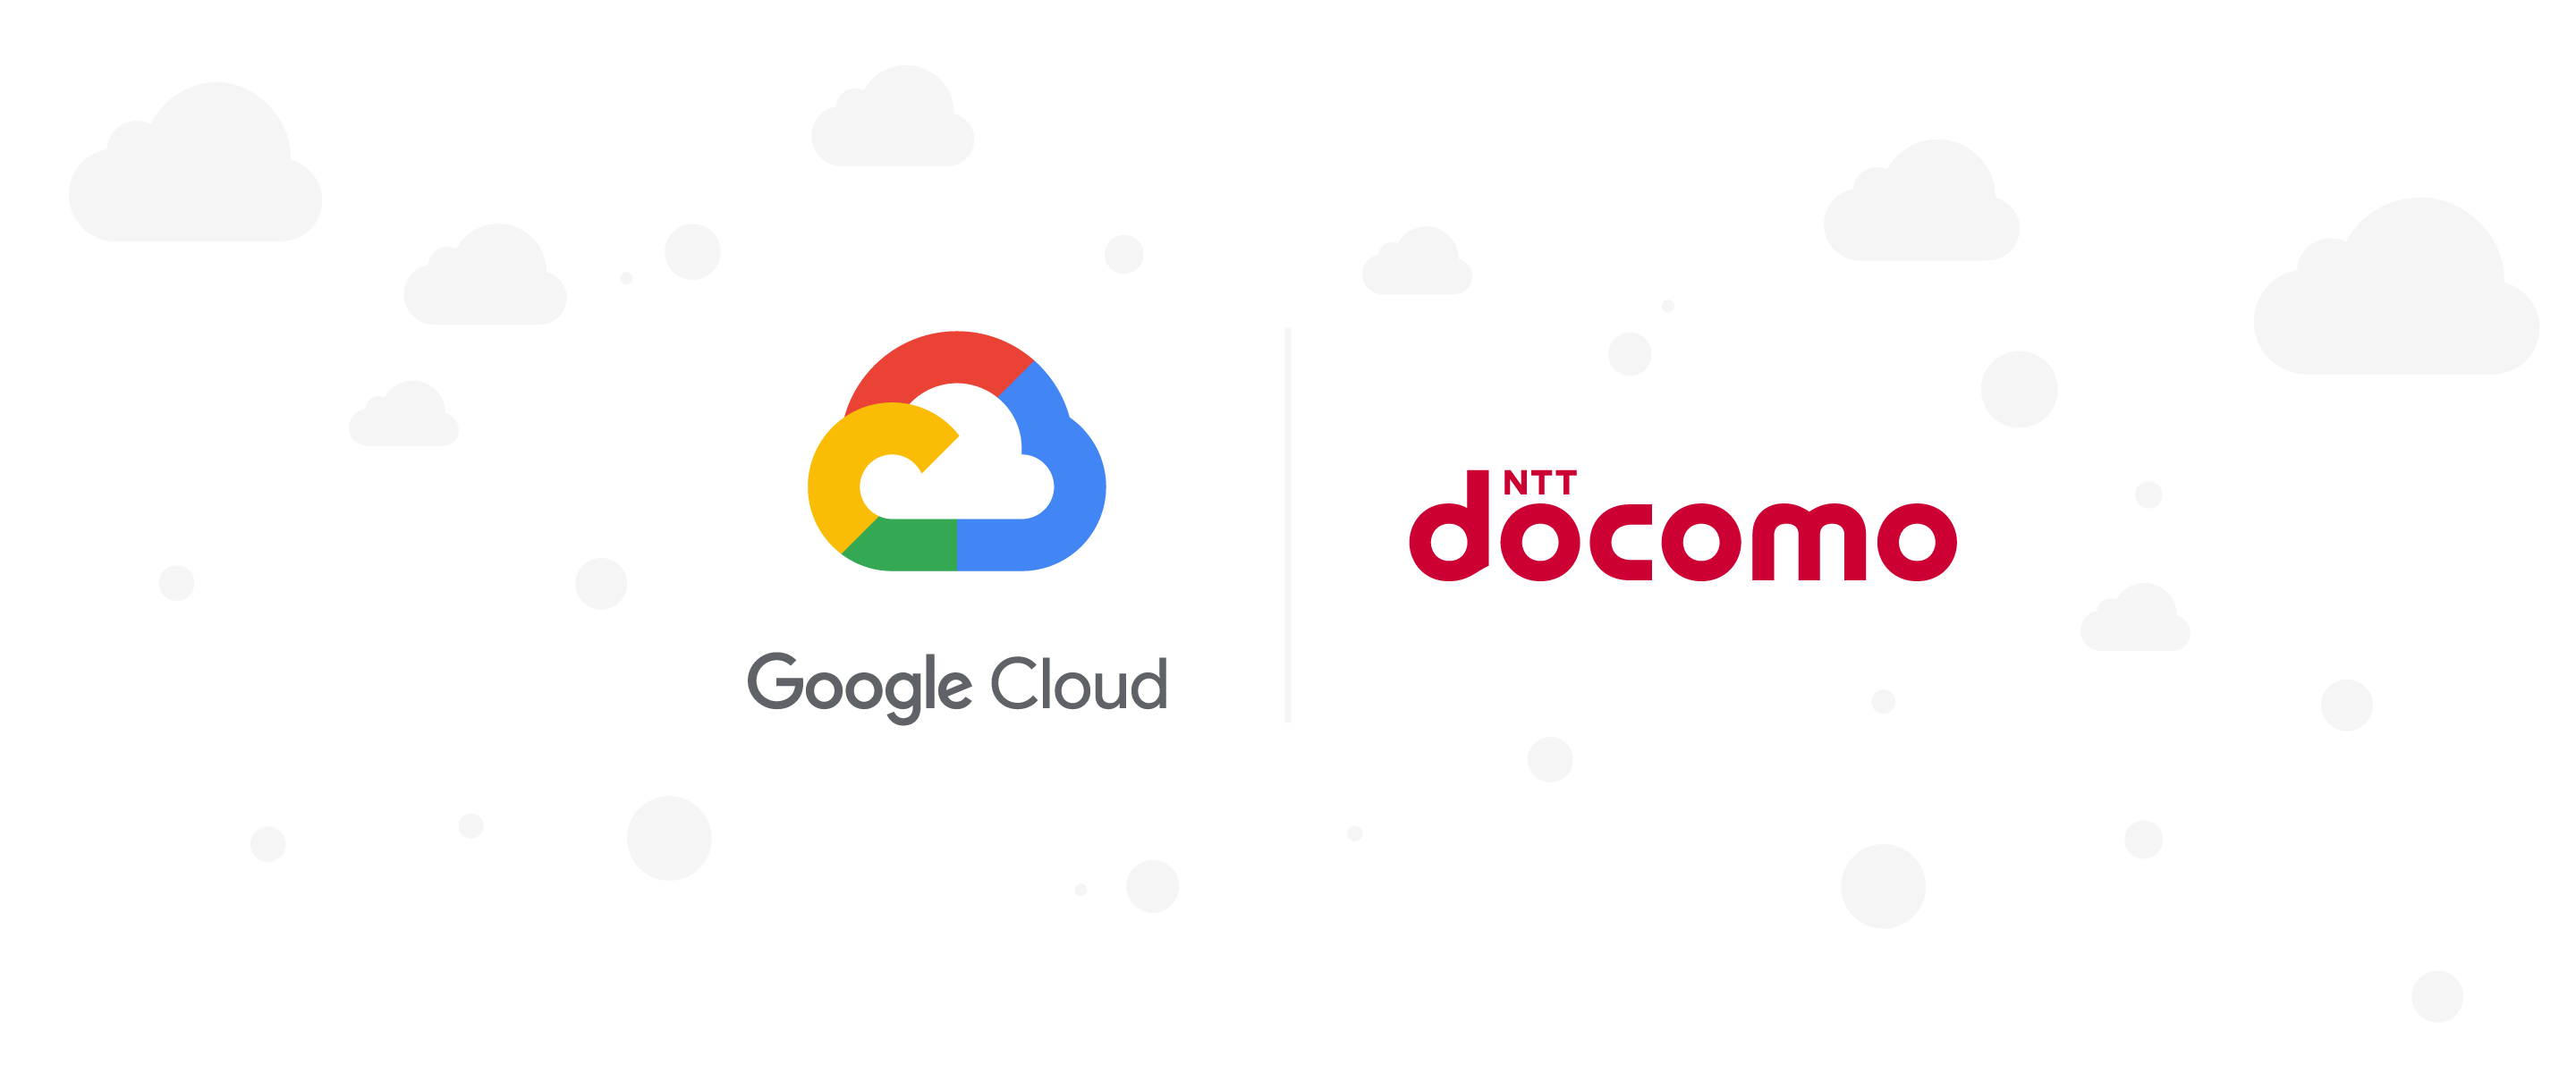 株式会社nttドコモ Gcp で It 基盤を一新 1 億件 日のデータ更新が必要となる パーソナルデータダッシュボード の開発に成功 Google Cloud Blog